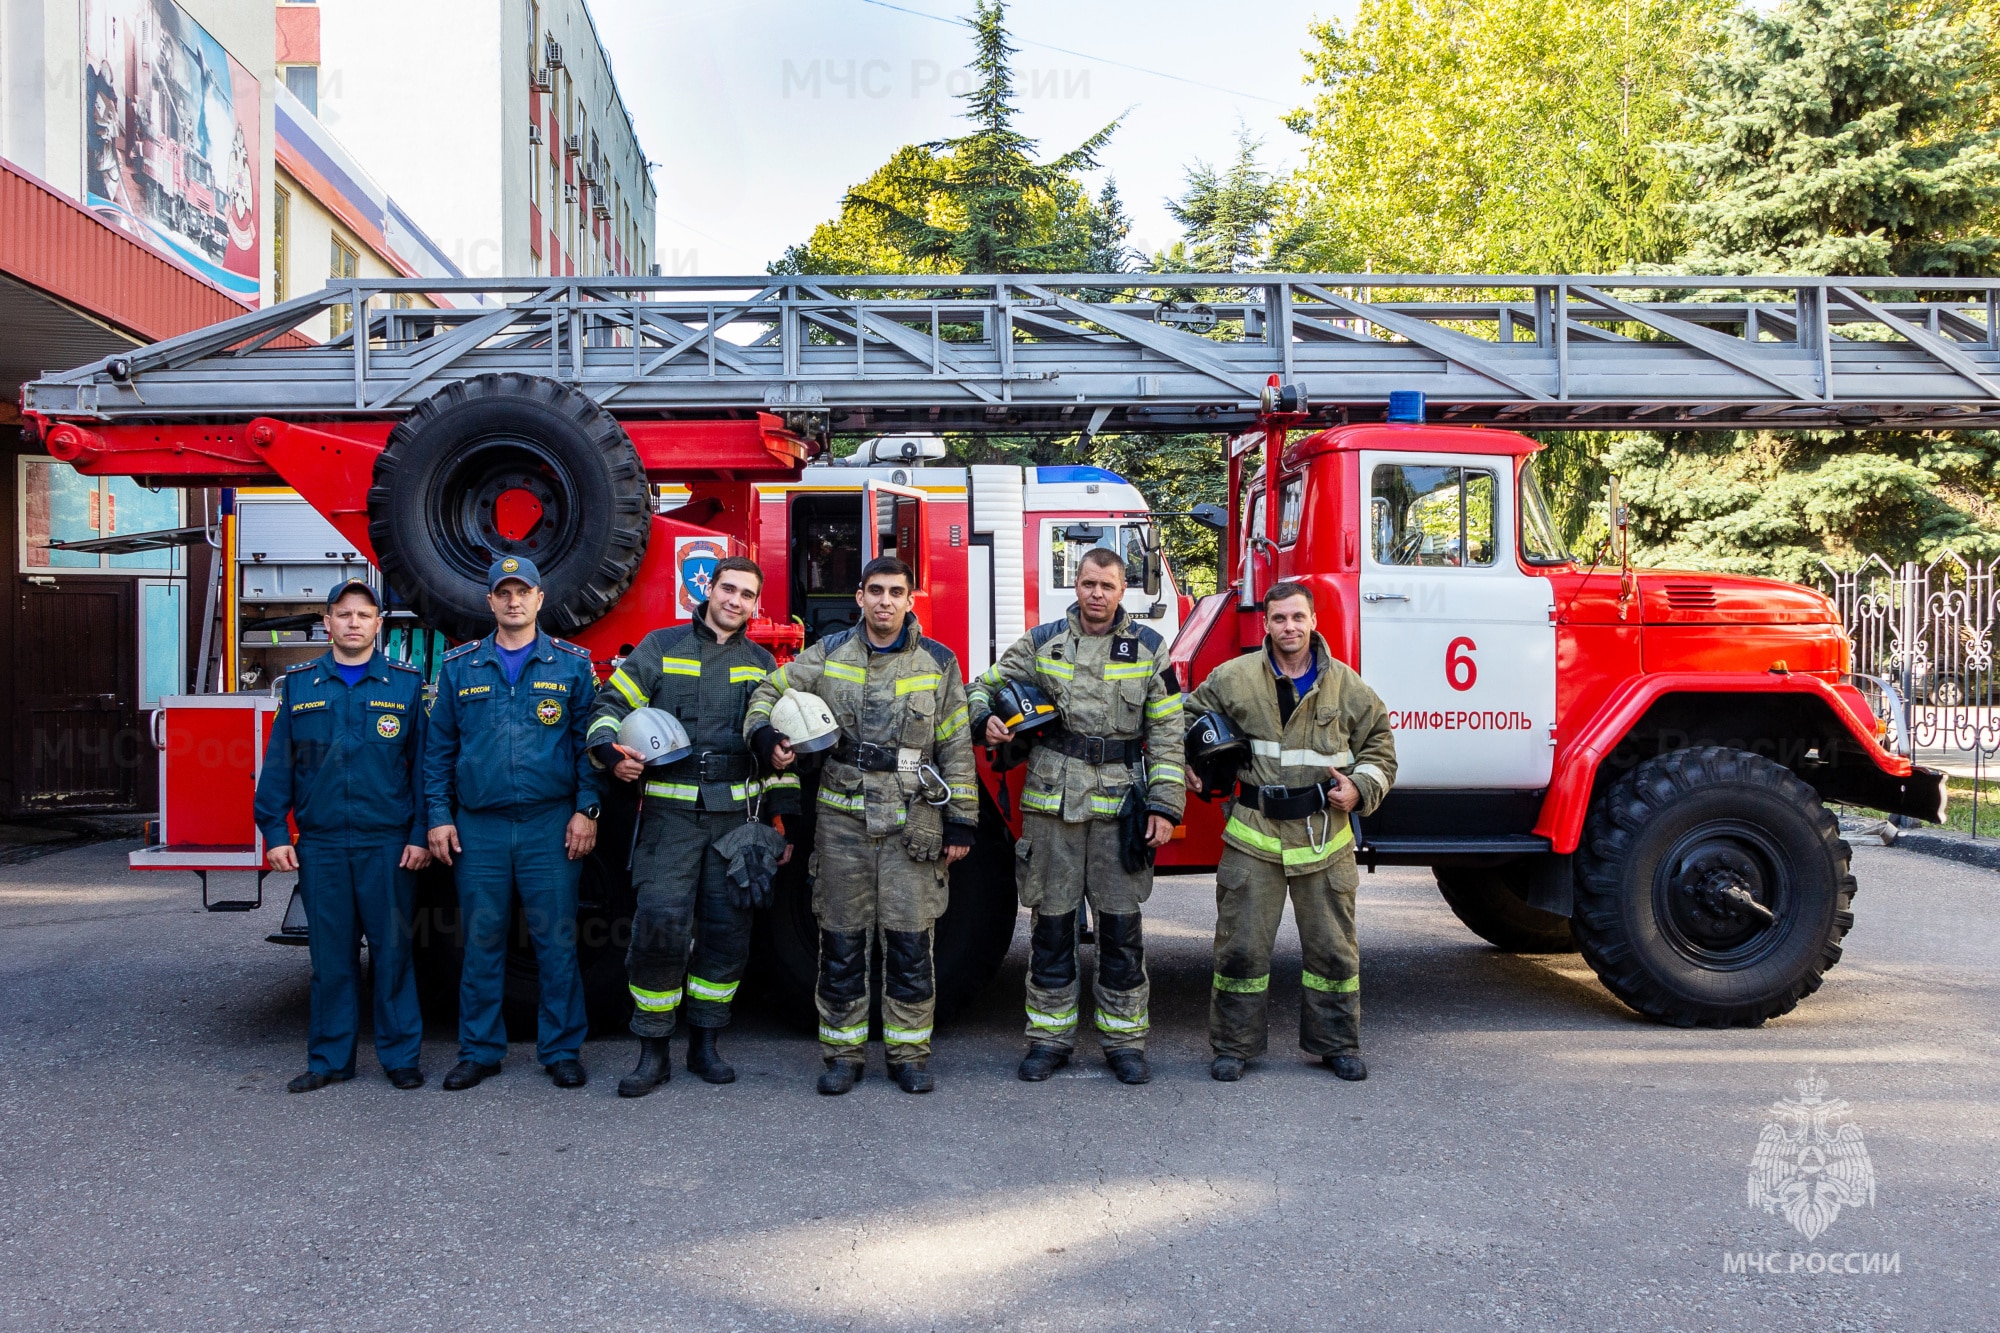 Симферопольские огнеборцы спасли 8 человек из горящей девятиэтажки